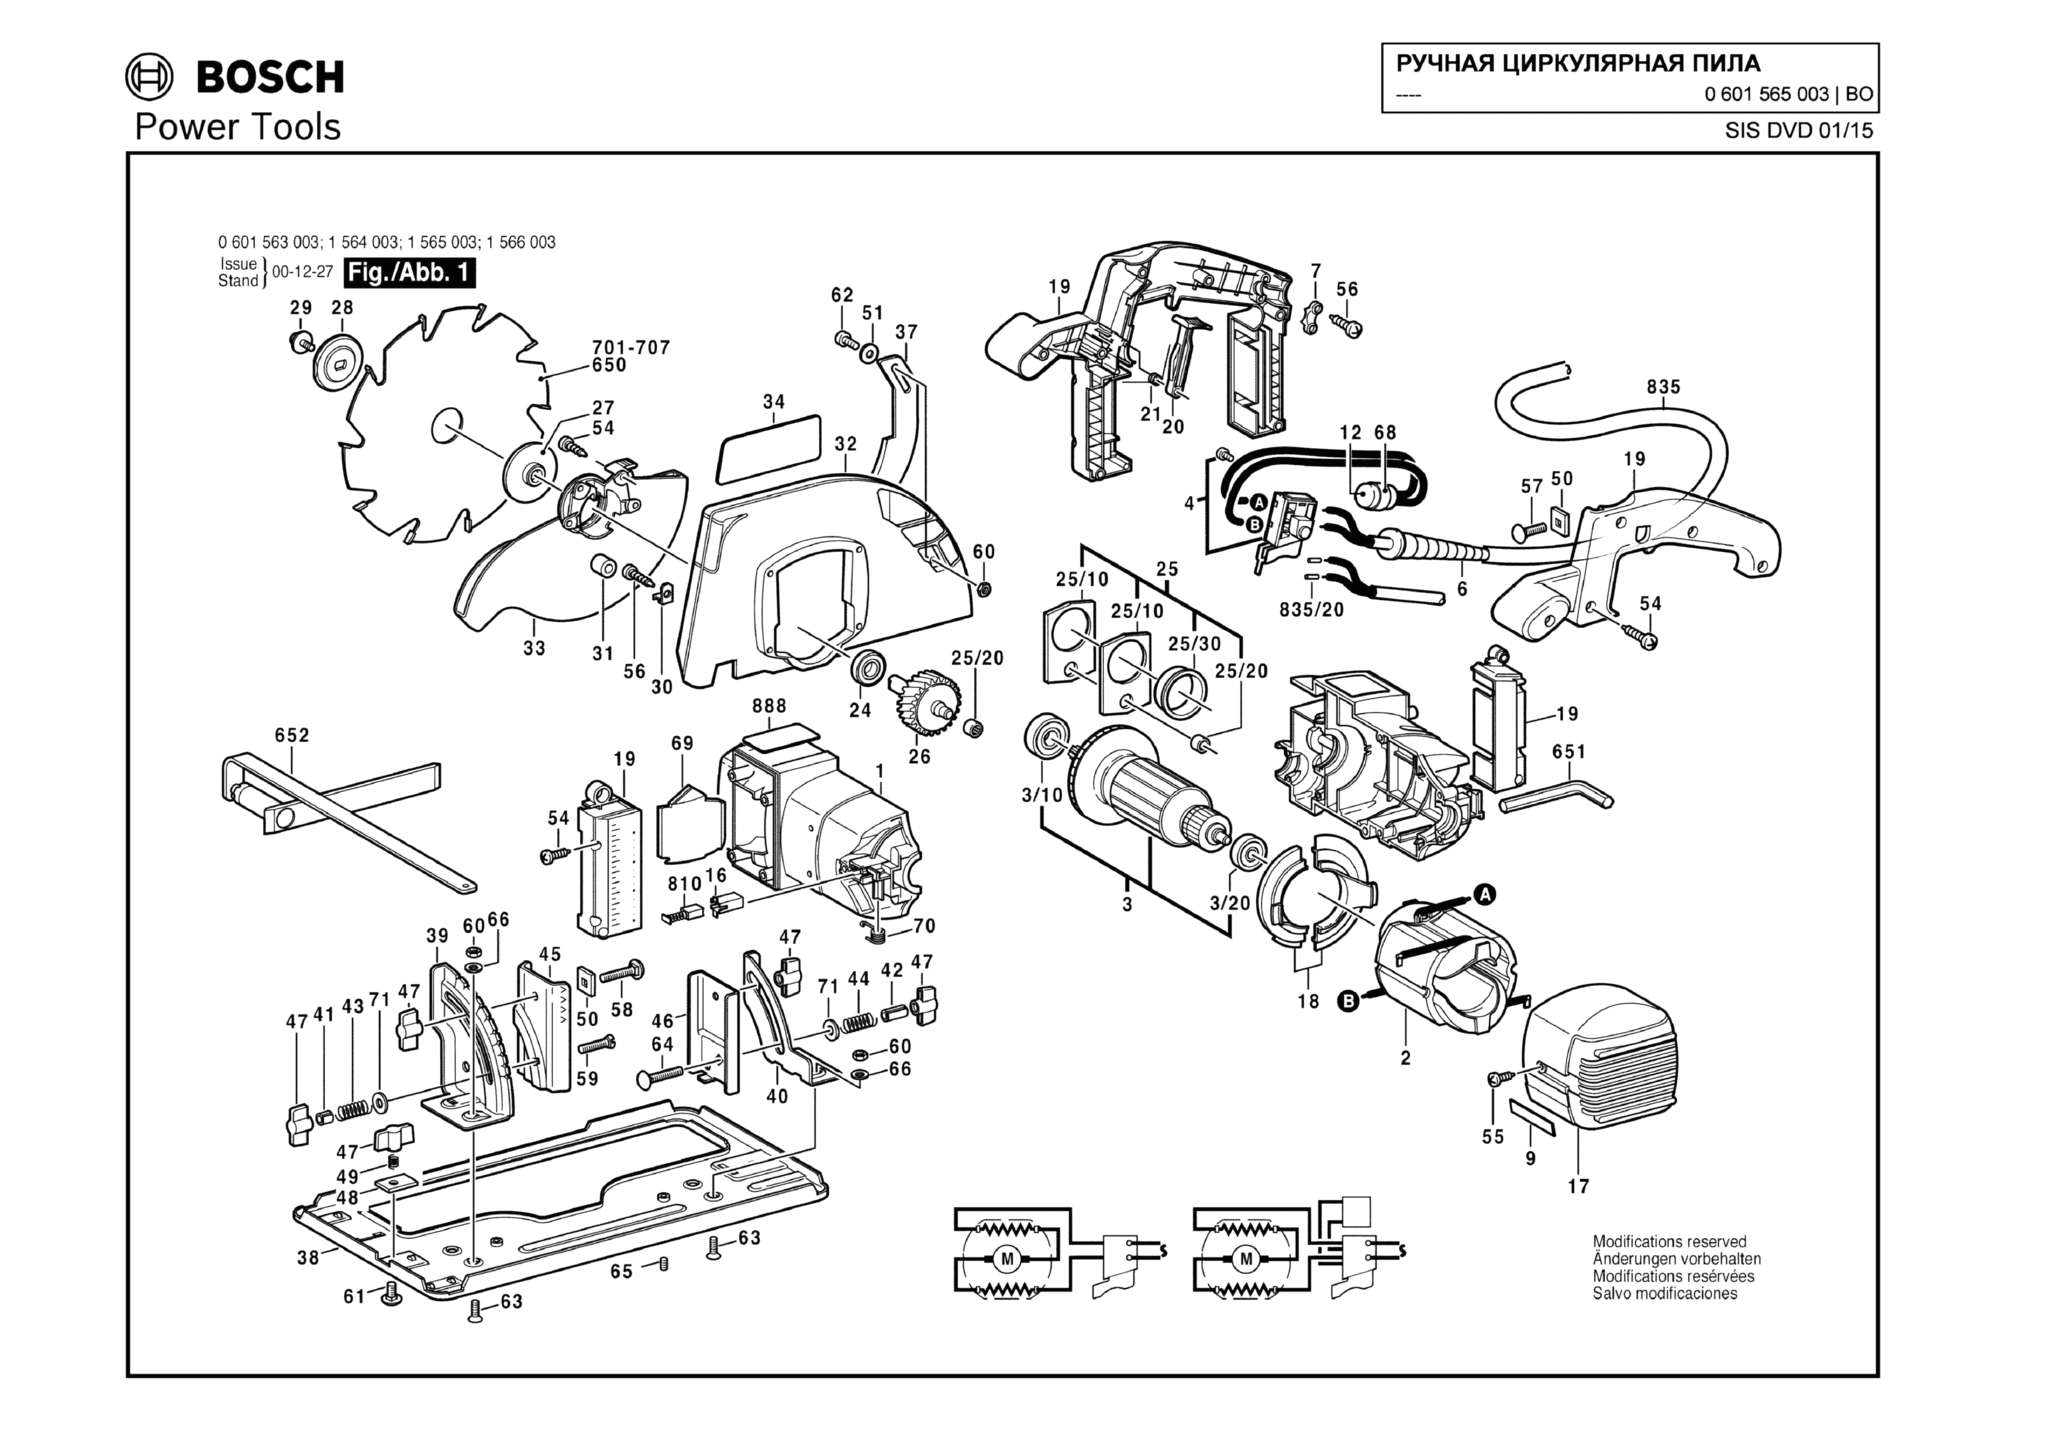 Запчасти, схема и деталировка Bosch (ТИП 0601565003)